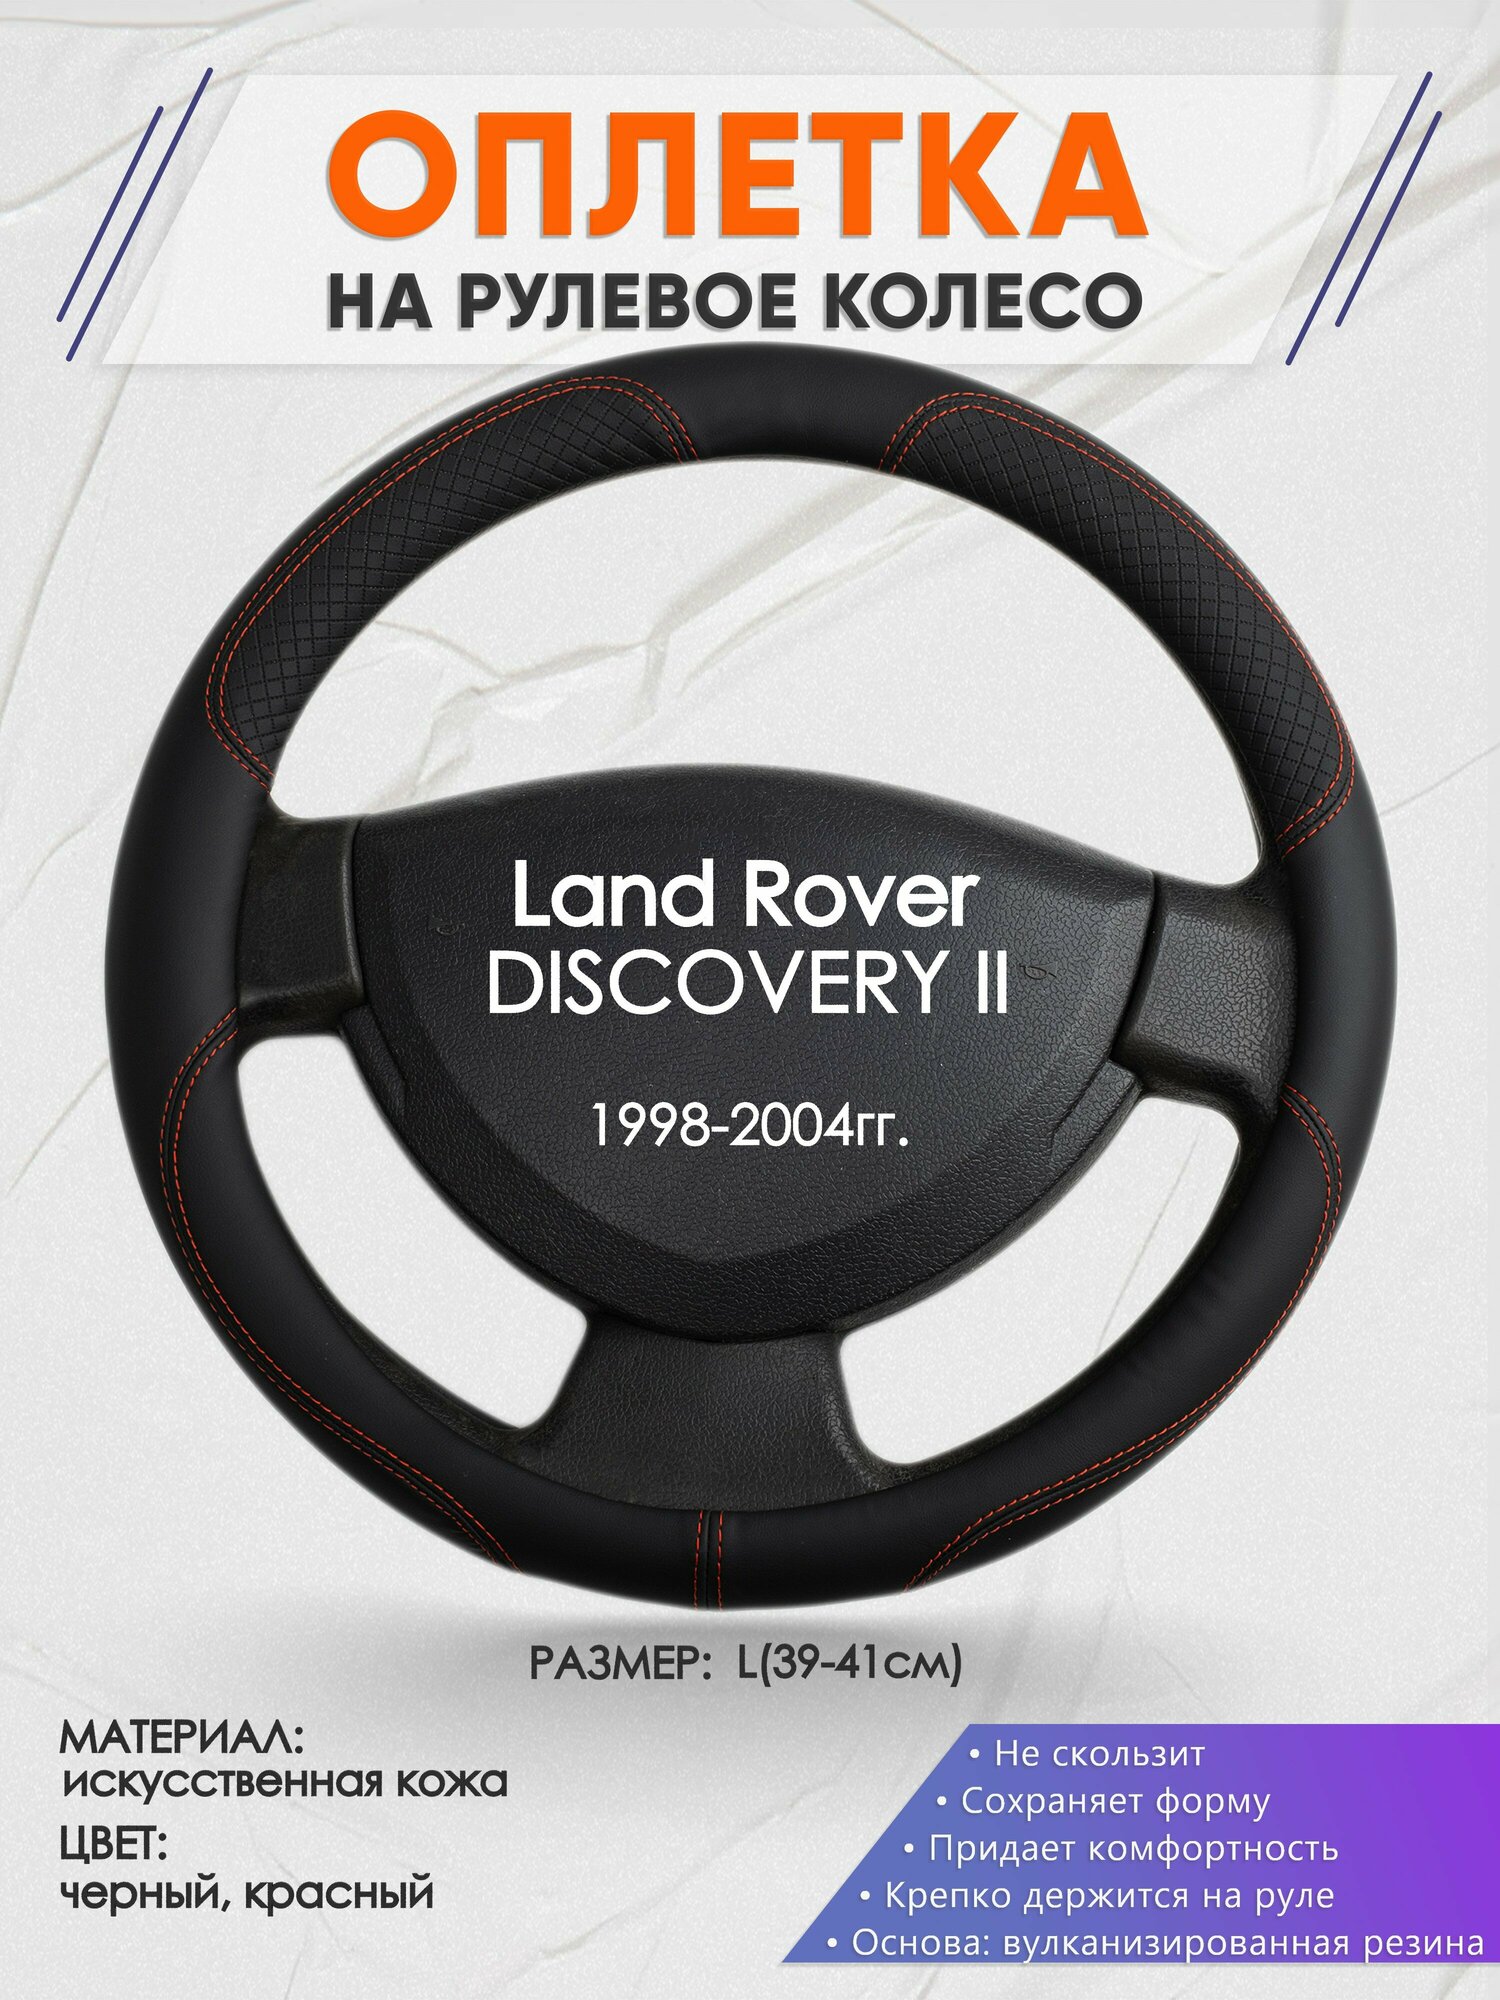 Оплетка на руль для Land Rover DISCOVERY 2(Ленд Ровер Дисковери) 1998-2004, L(39-41см), Искусственная кожа 61